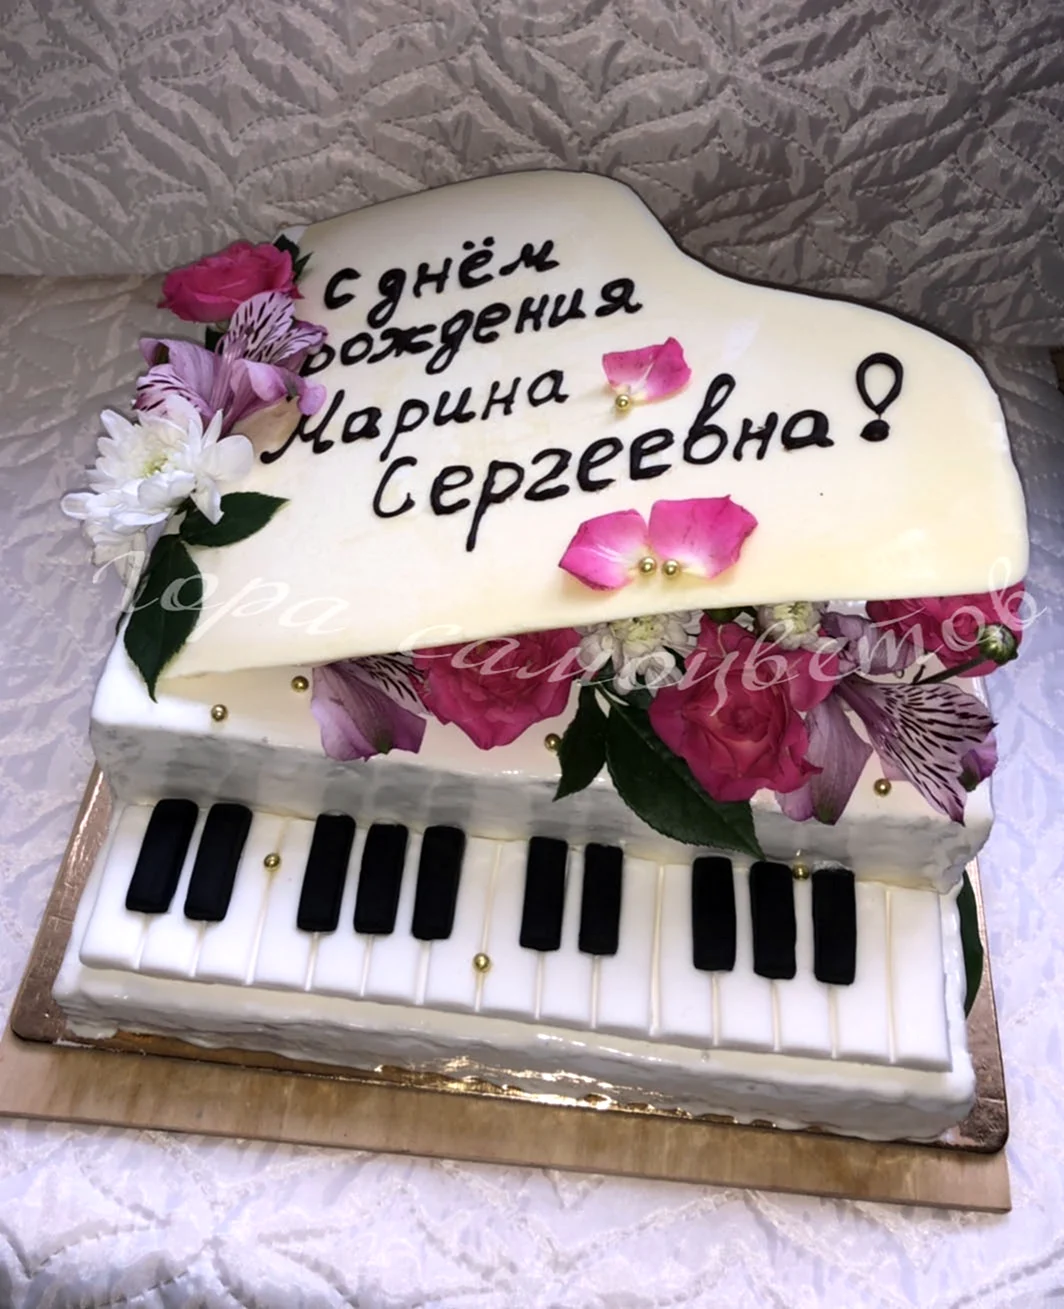 Марина Сергеевна с днем рождения